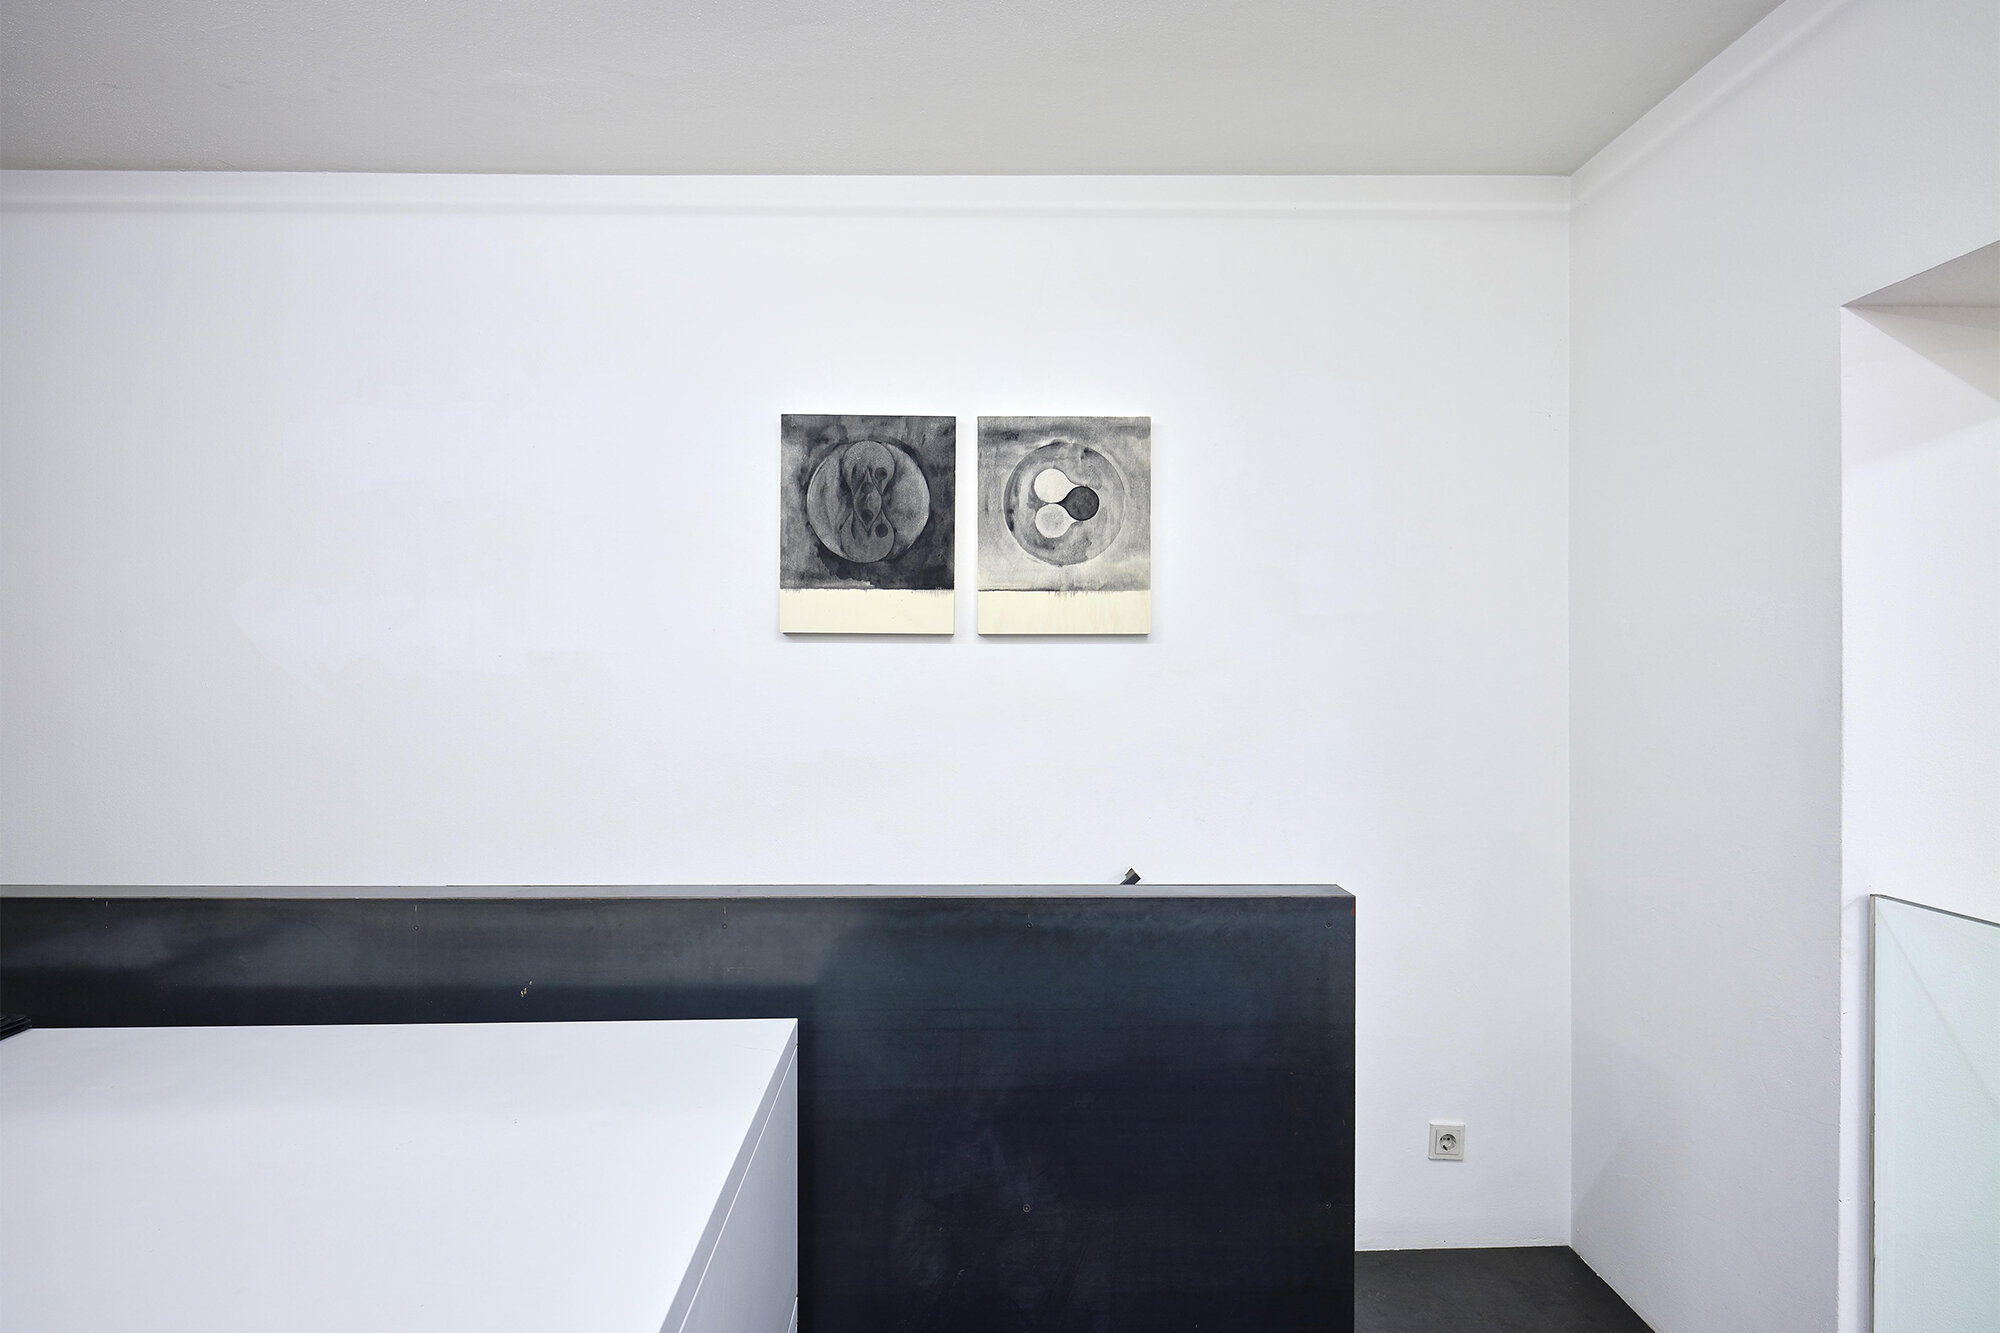 Galerie+Johann+Widauer-Exhibition-2020-Matt-Mullican-07.jpg